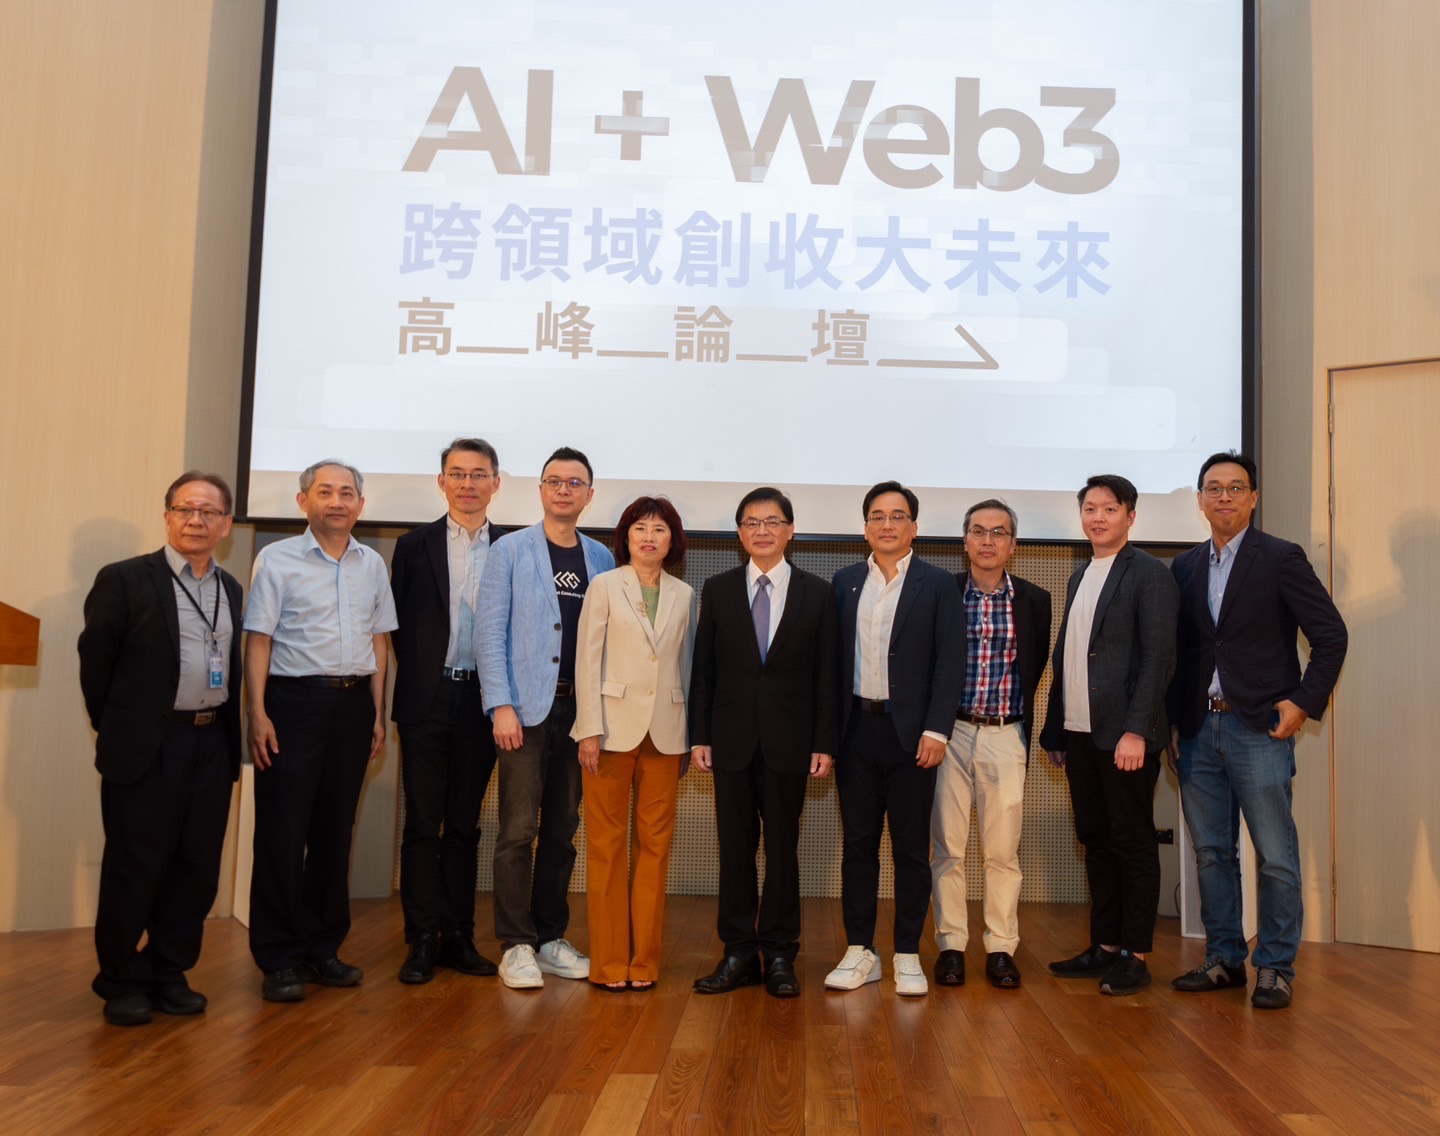 工工所校系友會主辦《AI + Web3 跨領域創收大未來高峰論壇》